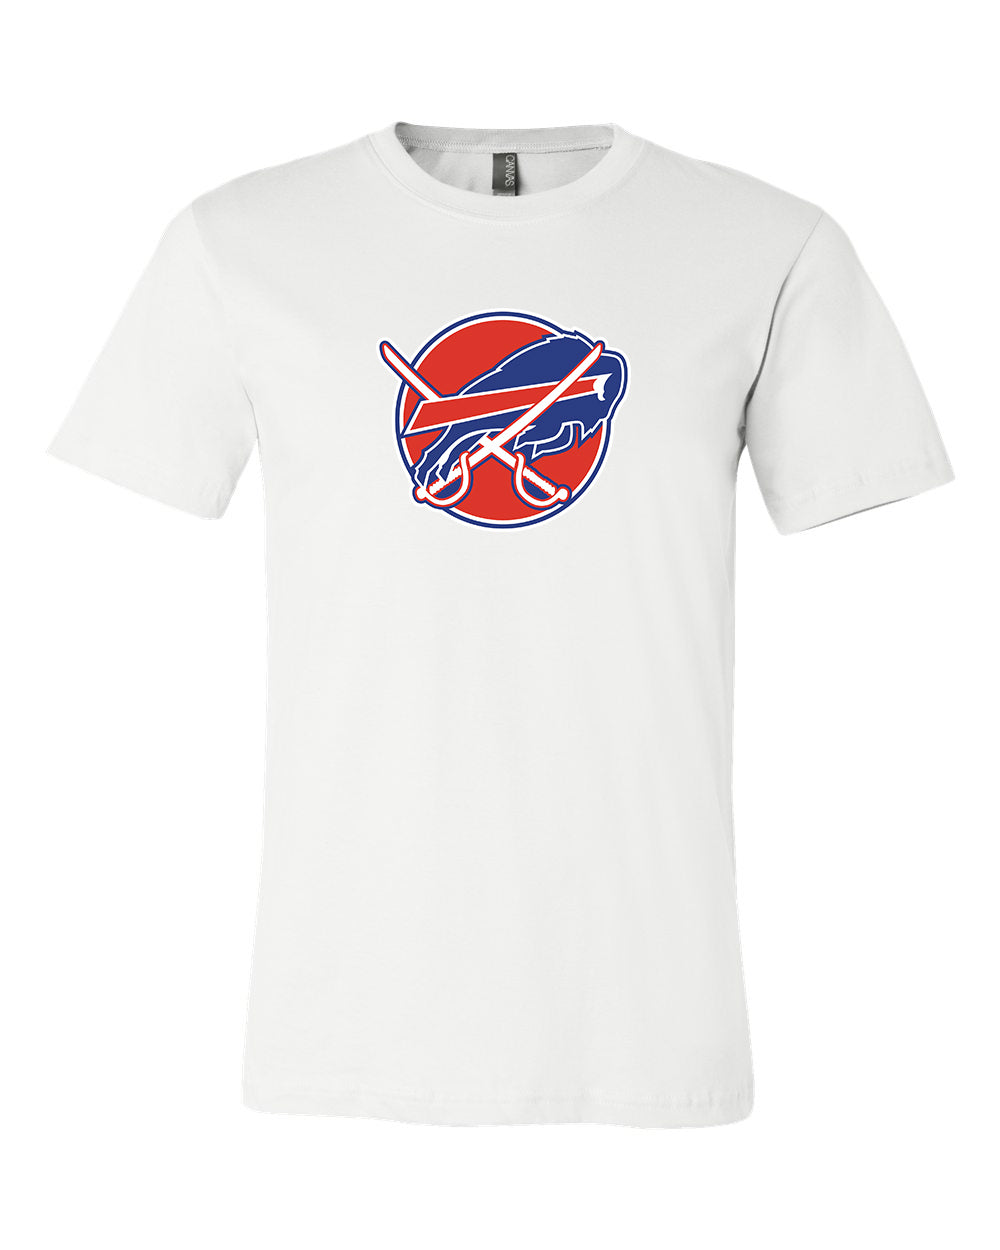 Buffalo Bills Buffalo Sabres Hawaiian Shirt For Men And Women